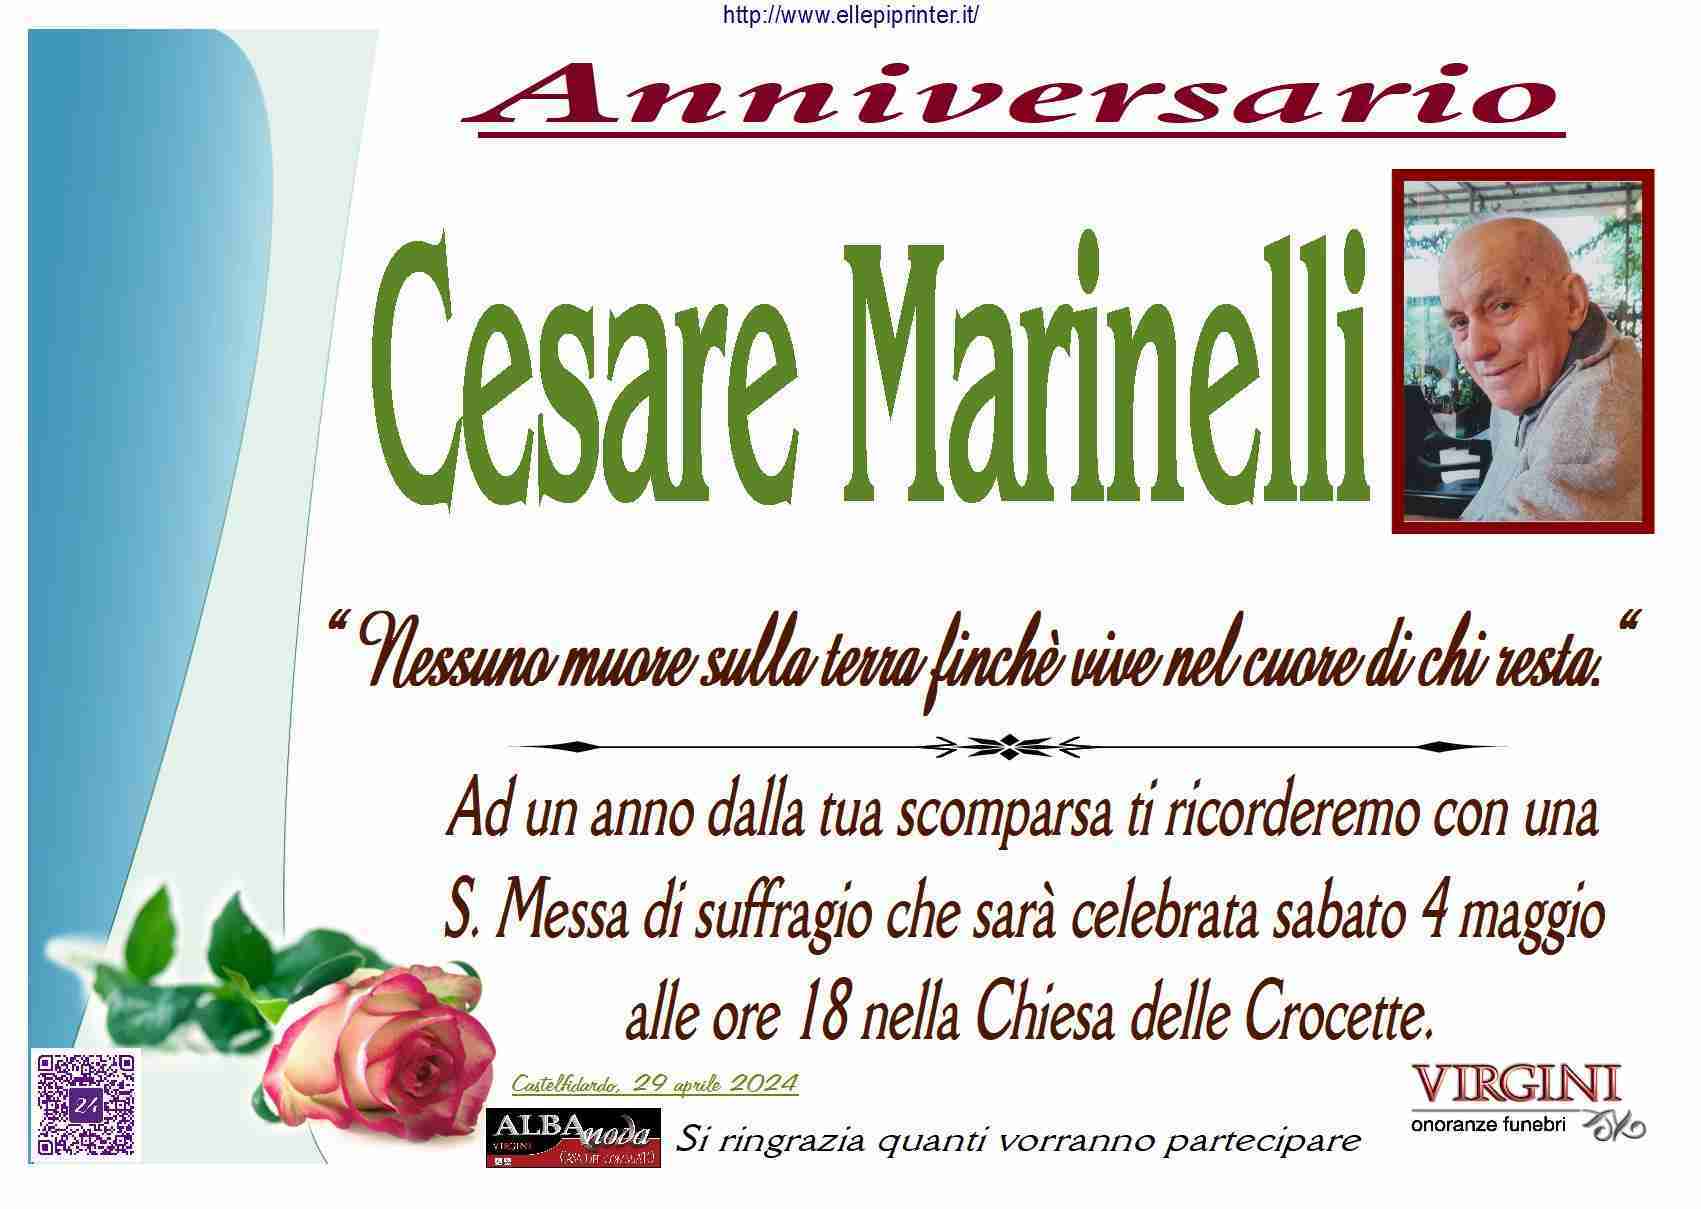 Cesare Marinelli